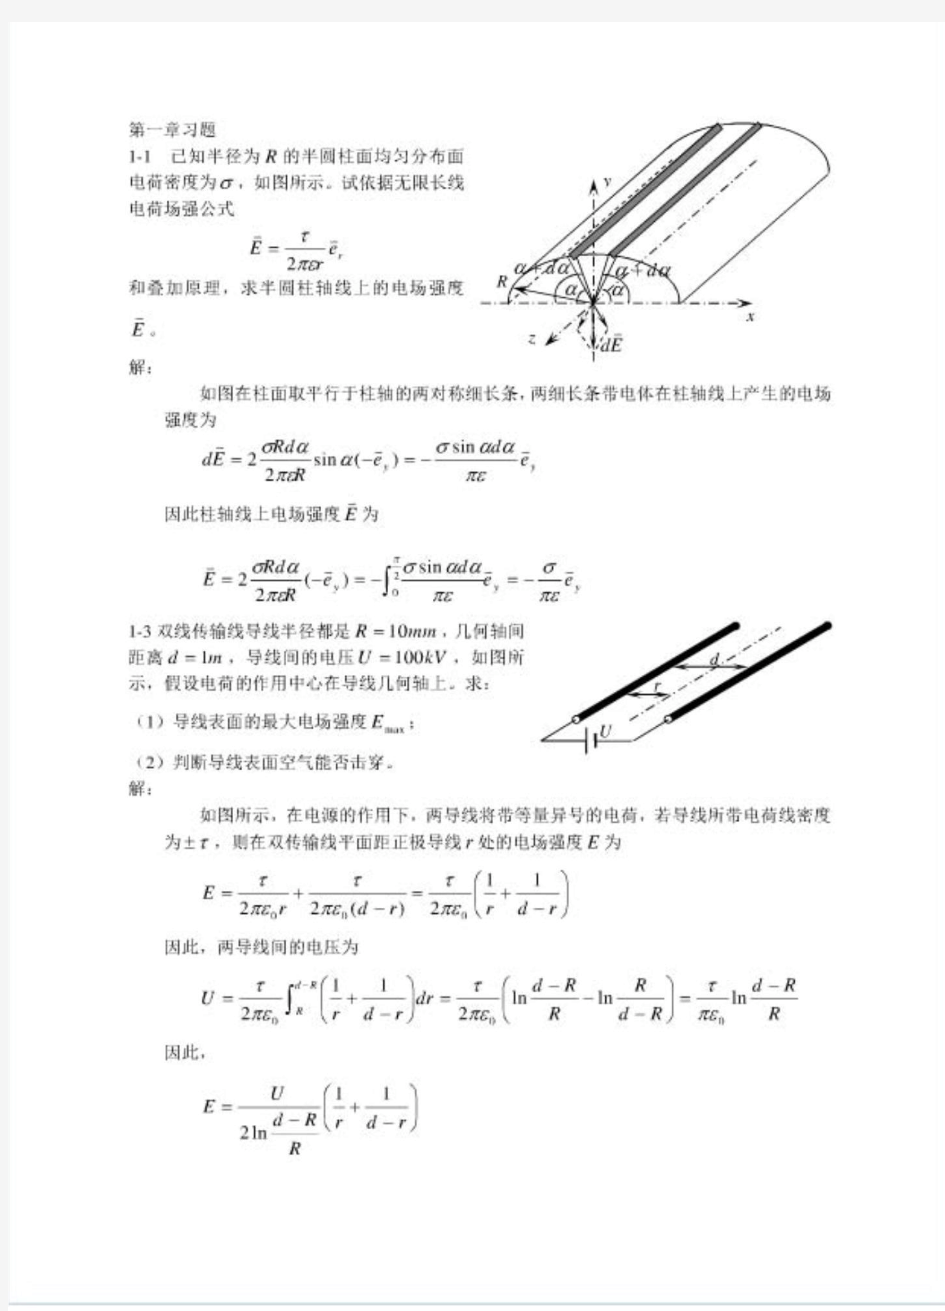 电磁场导论 (孟昭敦 著)课后习题答案 中国电力出版社